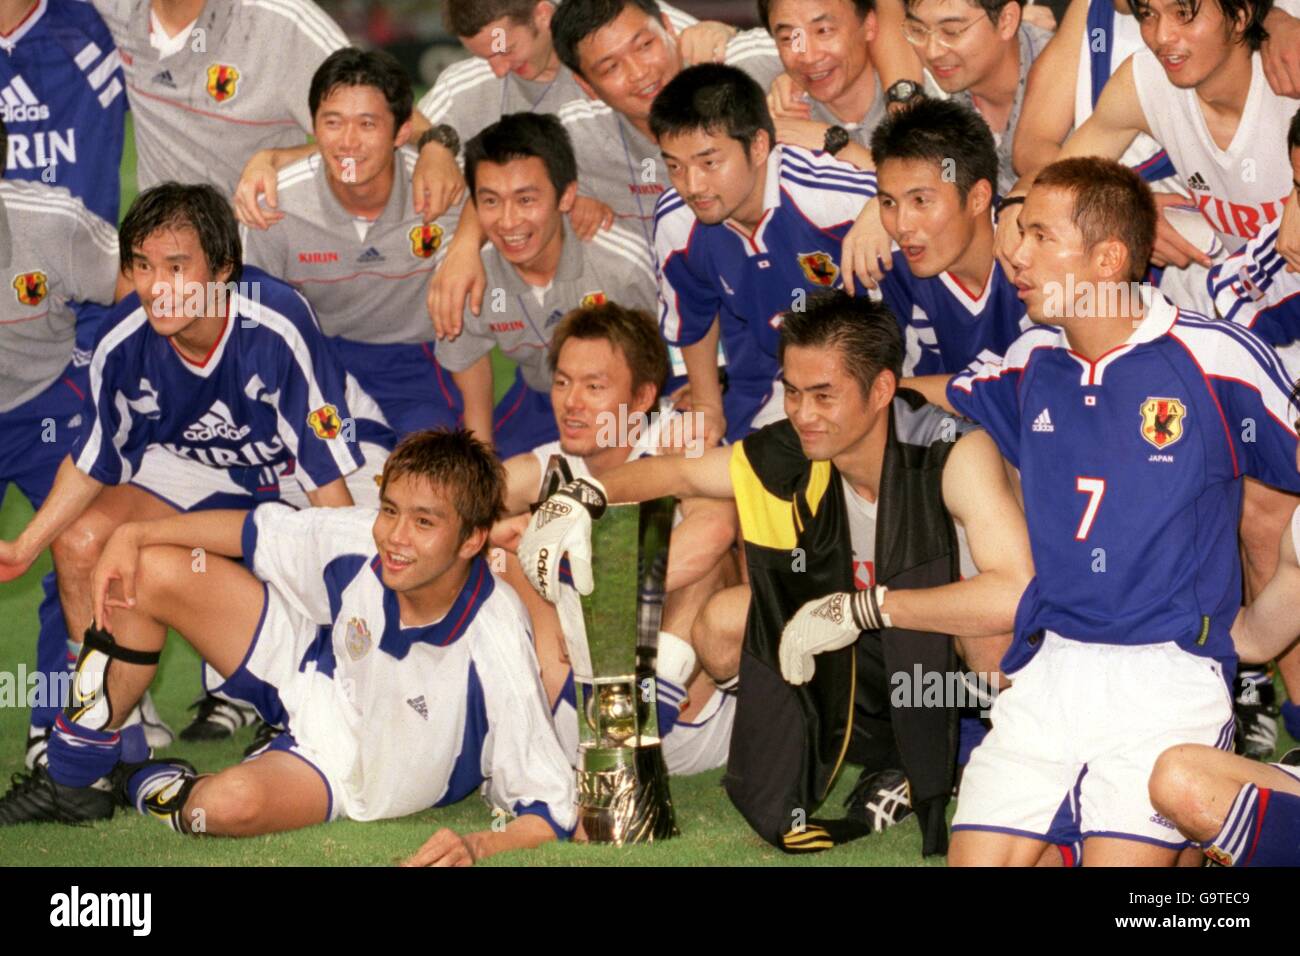 Soccer - Kirin Cup - Japan v Yugoslavia Stock Photo - Alamy